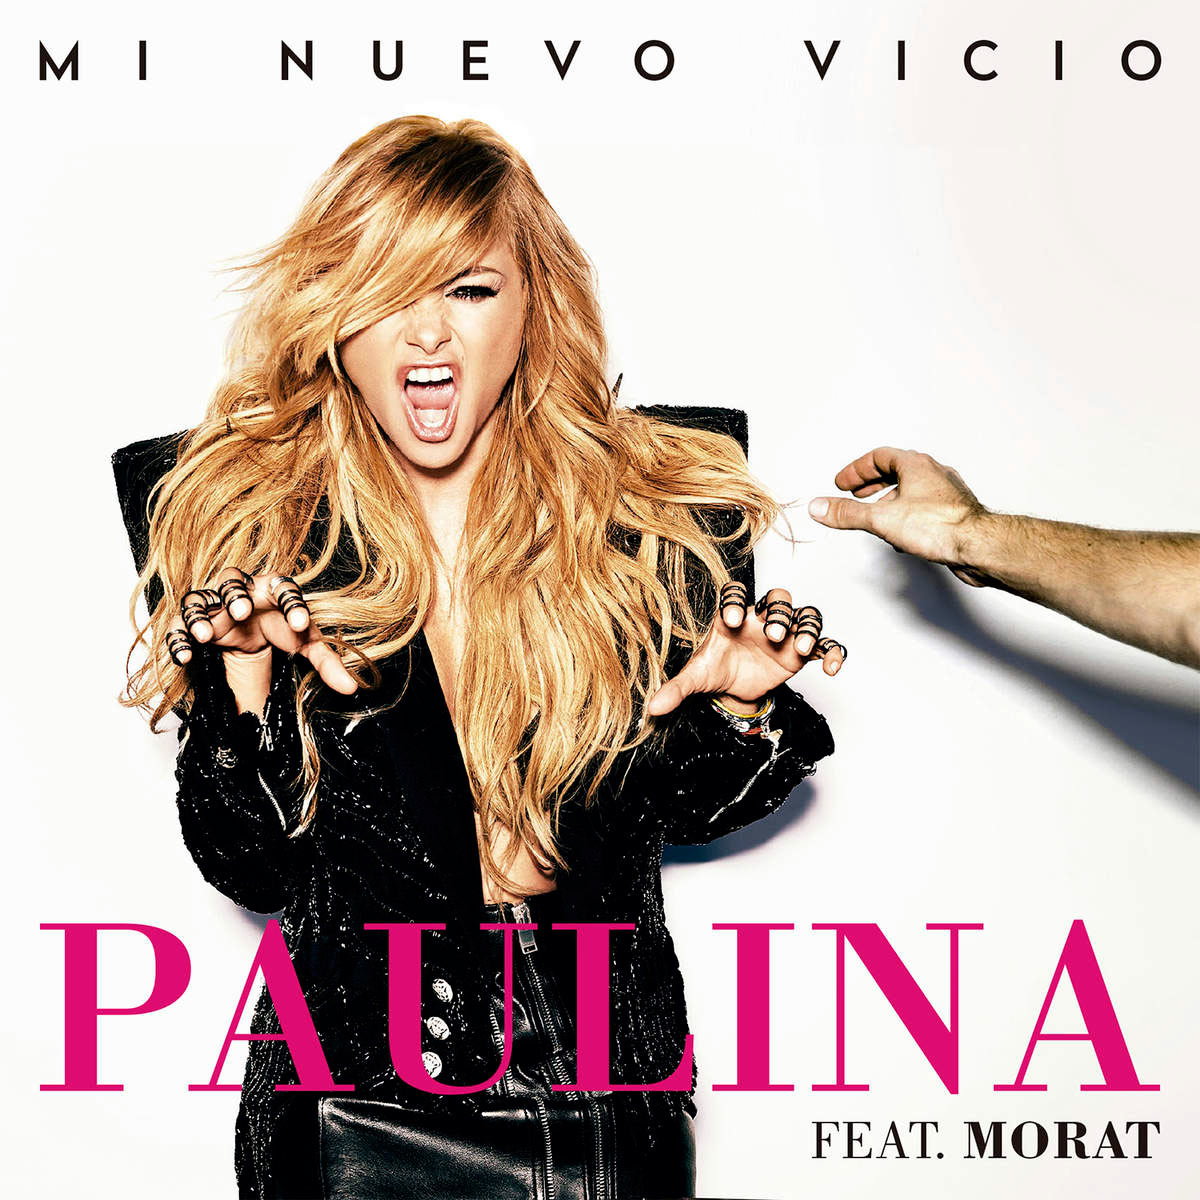 Paulina Rubio con Morat: Mi nuevo vicio, la portada de la canción